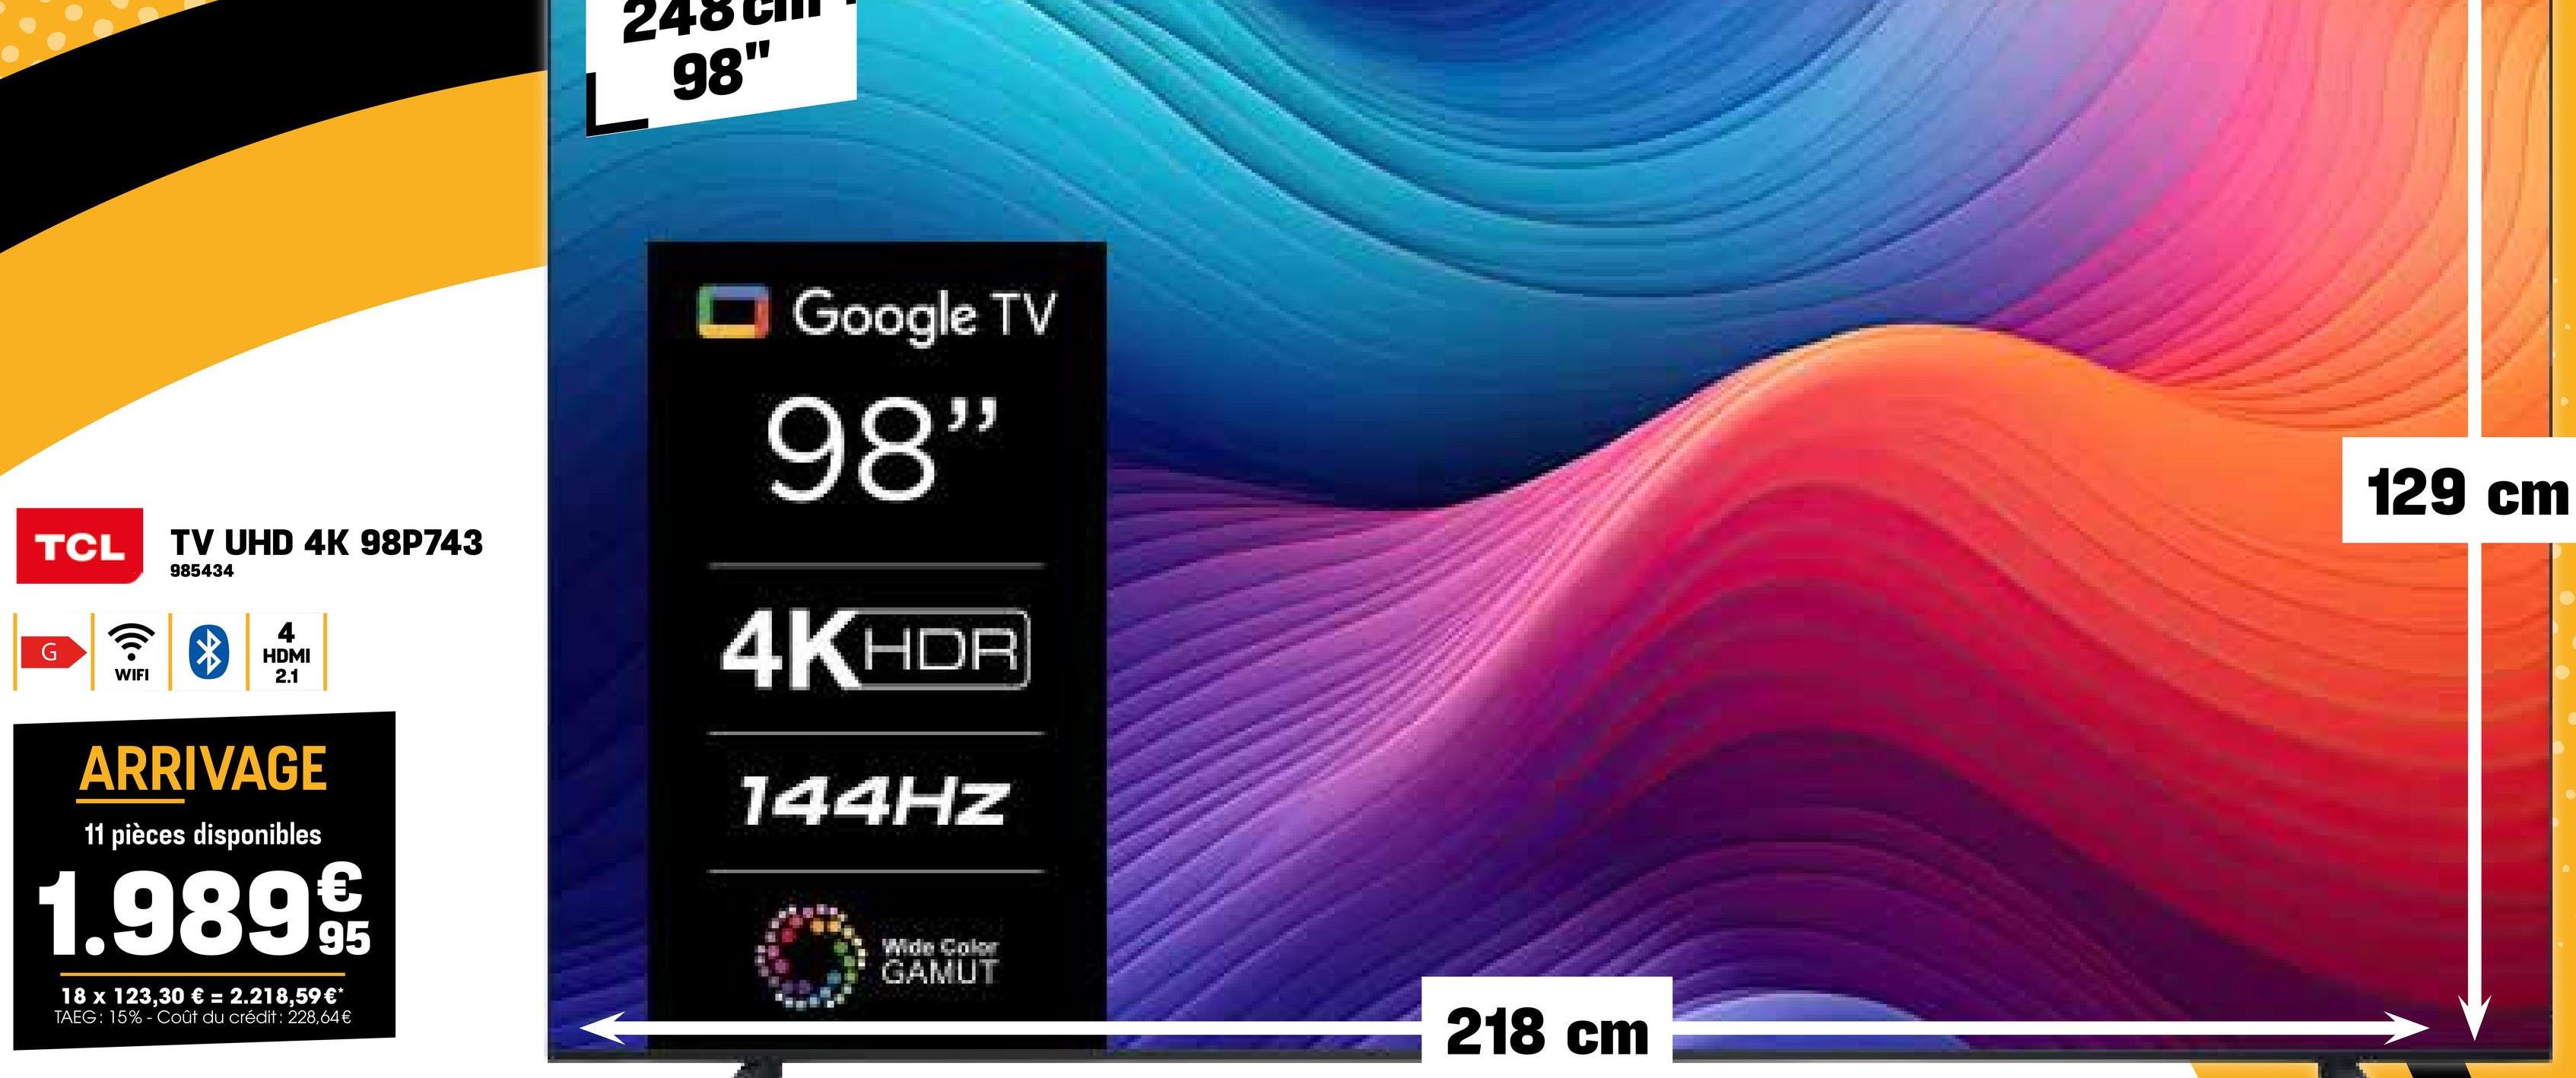 98"
TCL
G
WIFI
TV UHD 4K 98P743
985434
4
HDMI
2.1
Google TV
98"
4K HDR
144HZ
ARRIVAGE
11 pièces disponibles
€
1.989 9t
95
18 x 123,30 € = 2.218,59 €*
TAEG: 15%- Coût du crédit : 228,64€
Wide Color
GAMUT
218 cm
129 cm